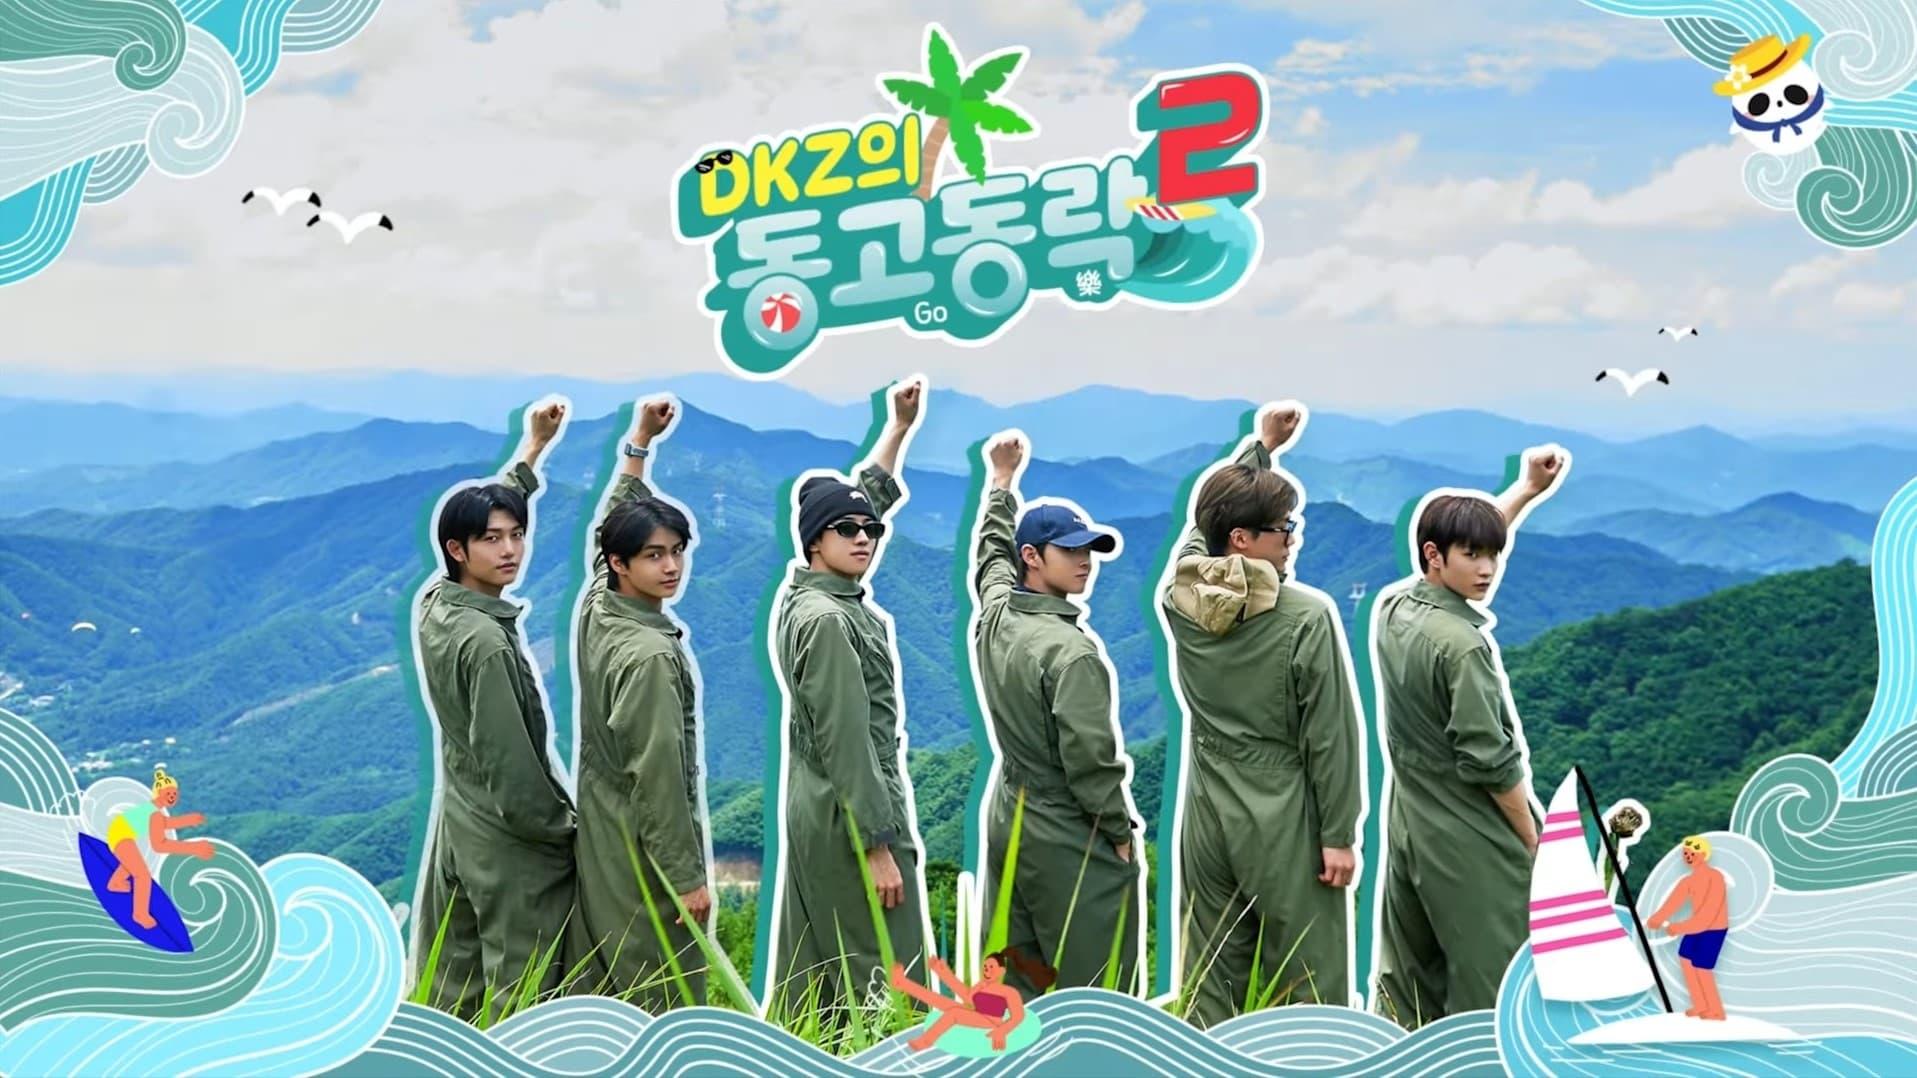 DKZ's Dong-Go-Dong-Rak backdrop